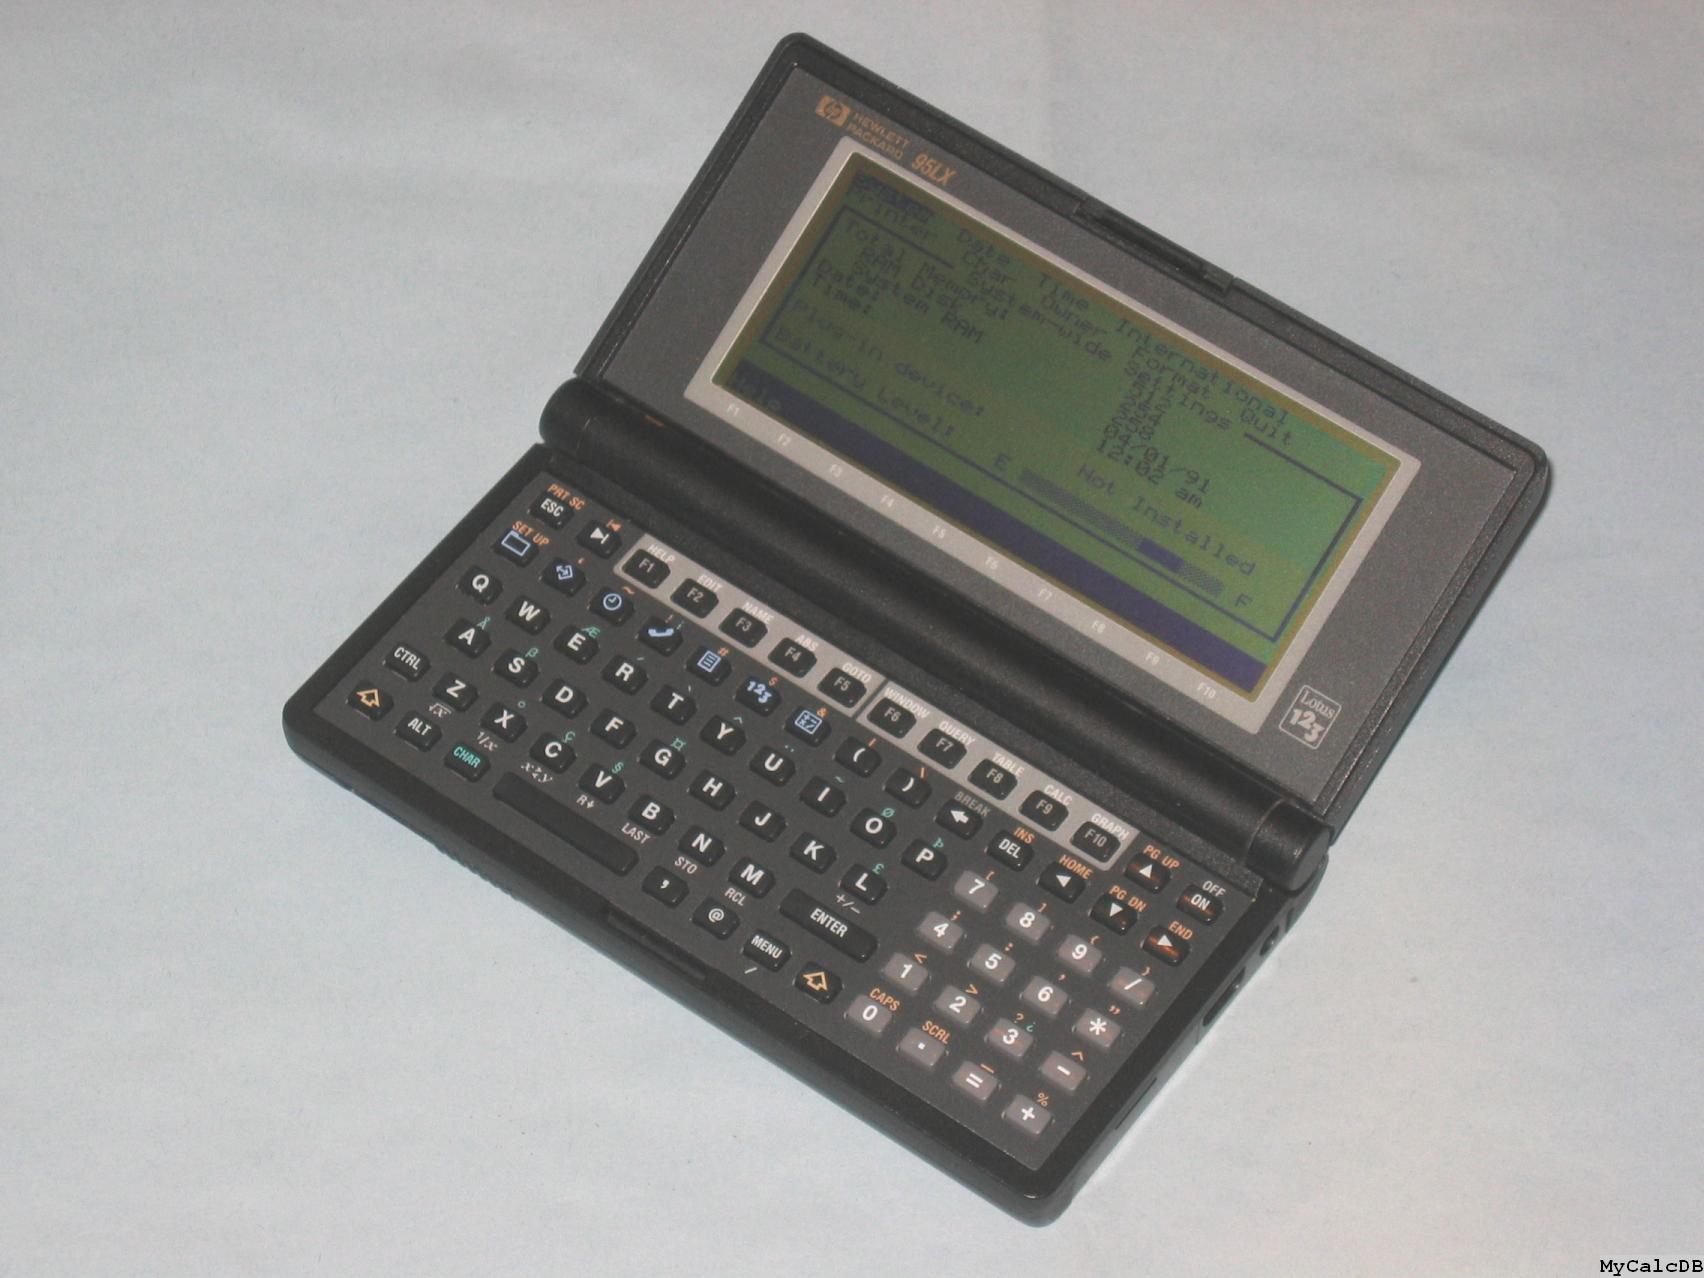 Hewlett-Packard 95LX